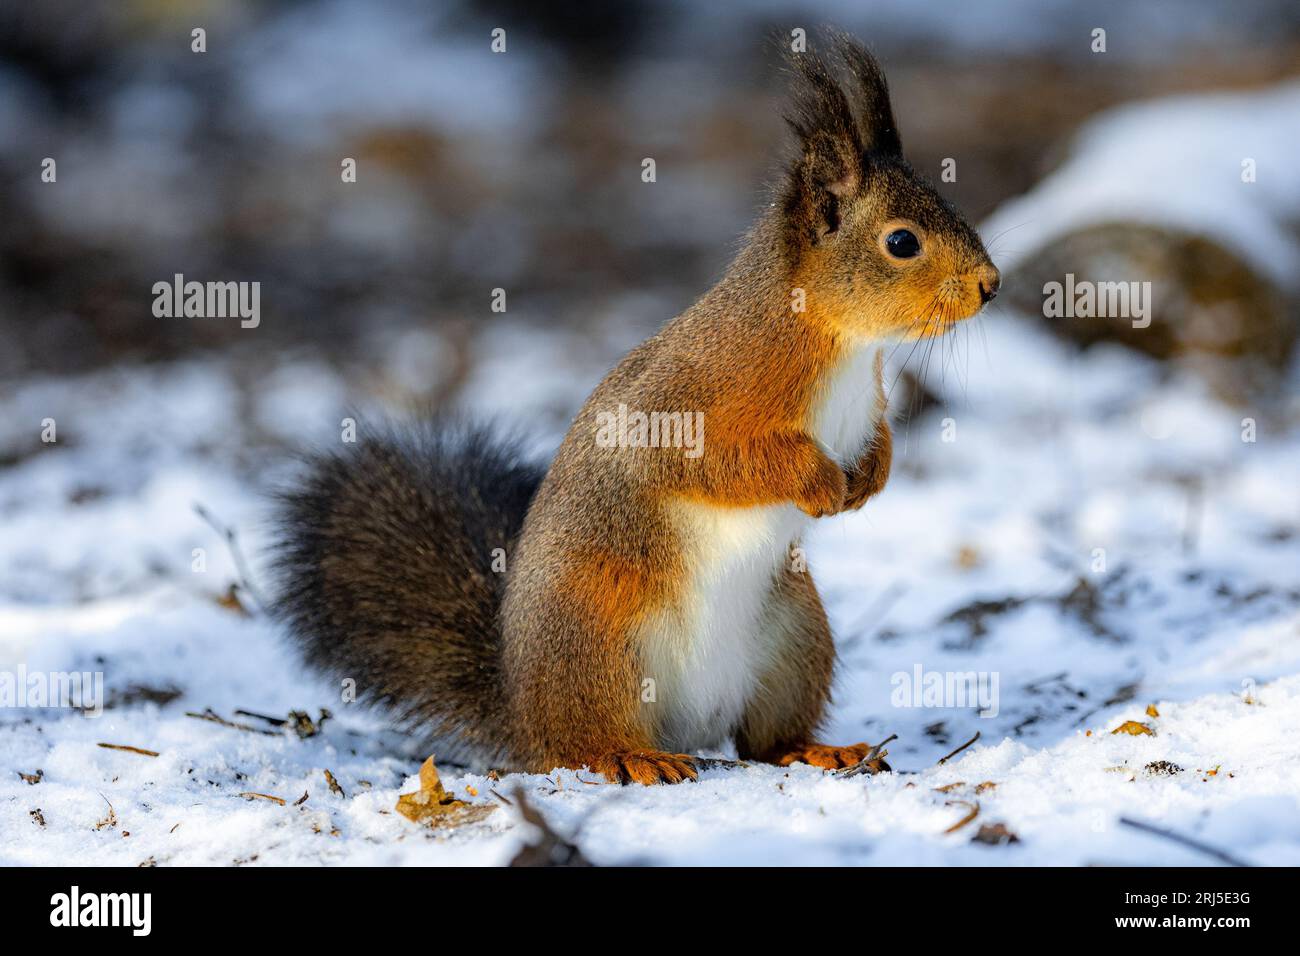 Uno scoiattolo allegro si erge in cima a un terreno innevato, brunendo con gioia un gustoso spuntino Foto Stock